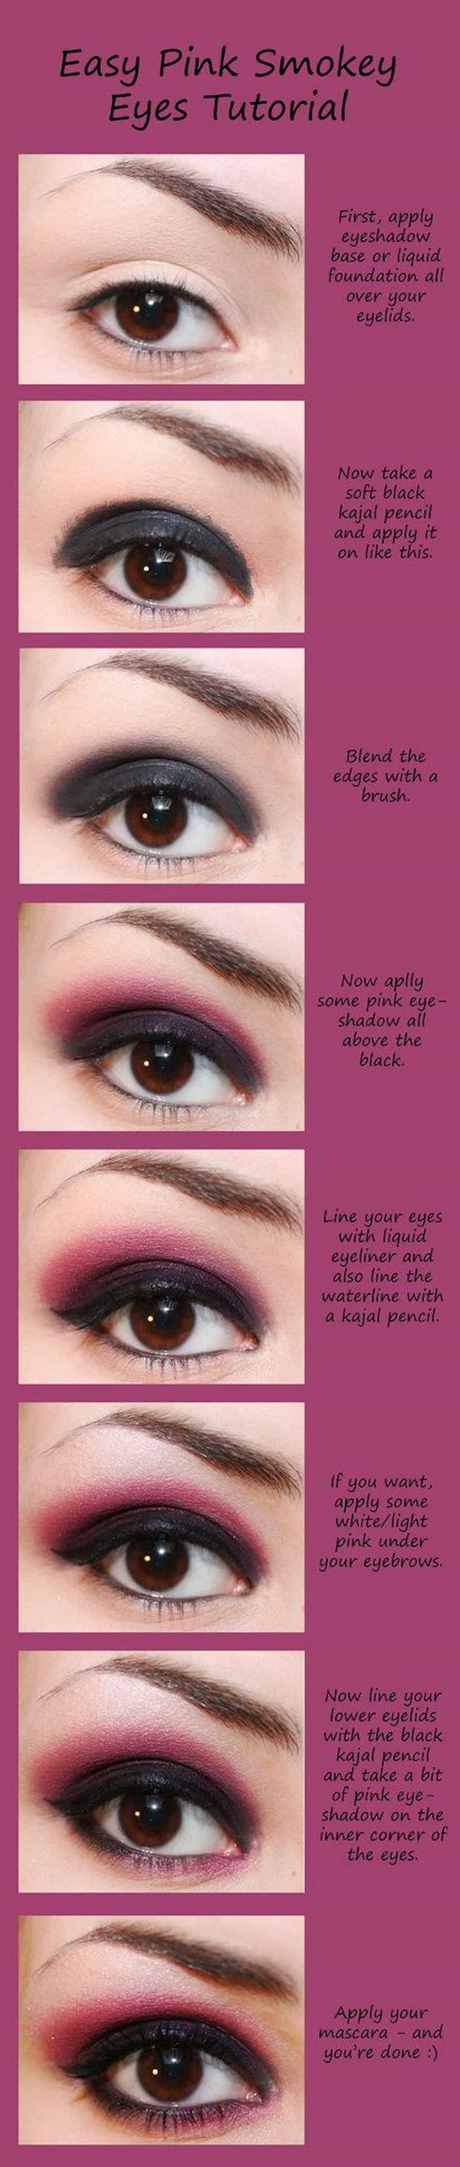 smokey-eye-makeup-tips-07_3 Smokey eye make-up tips